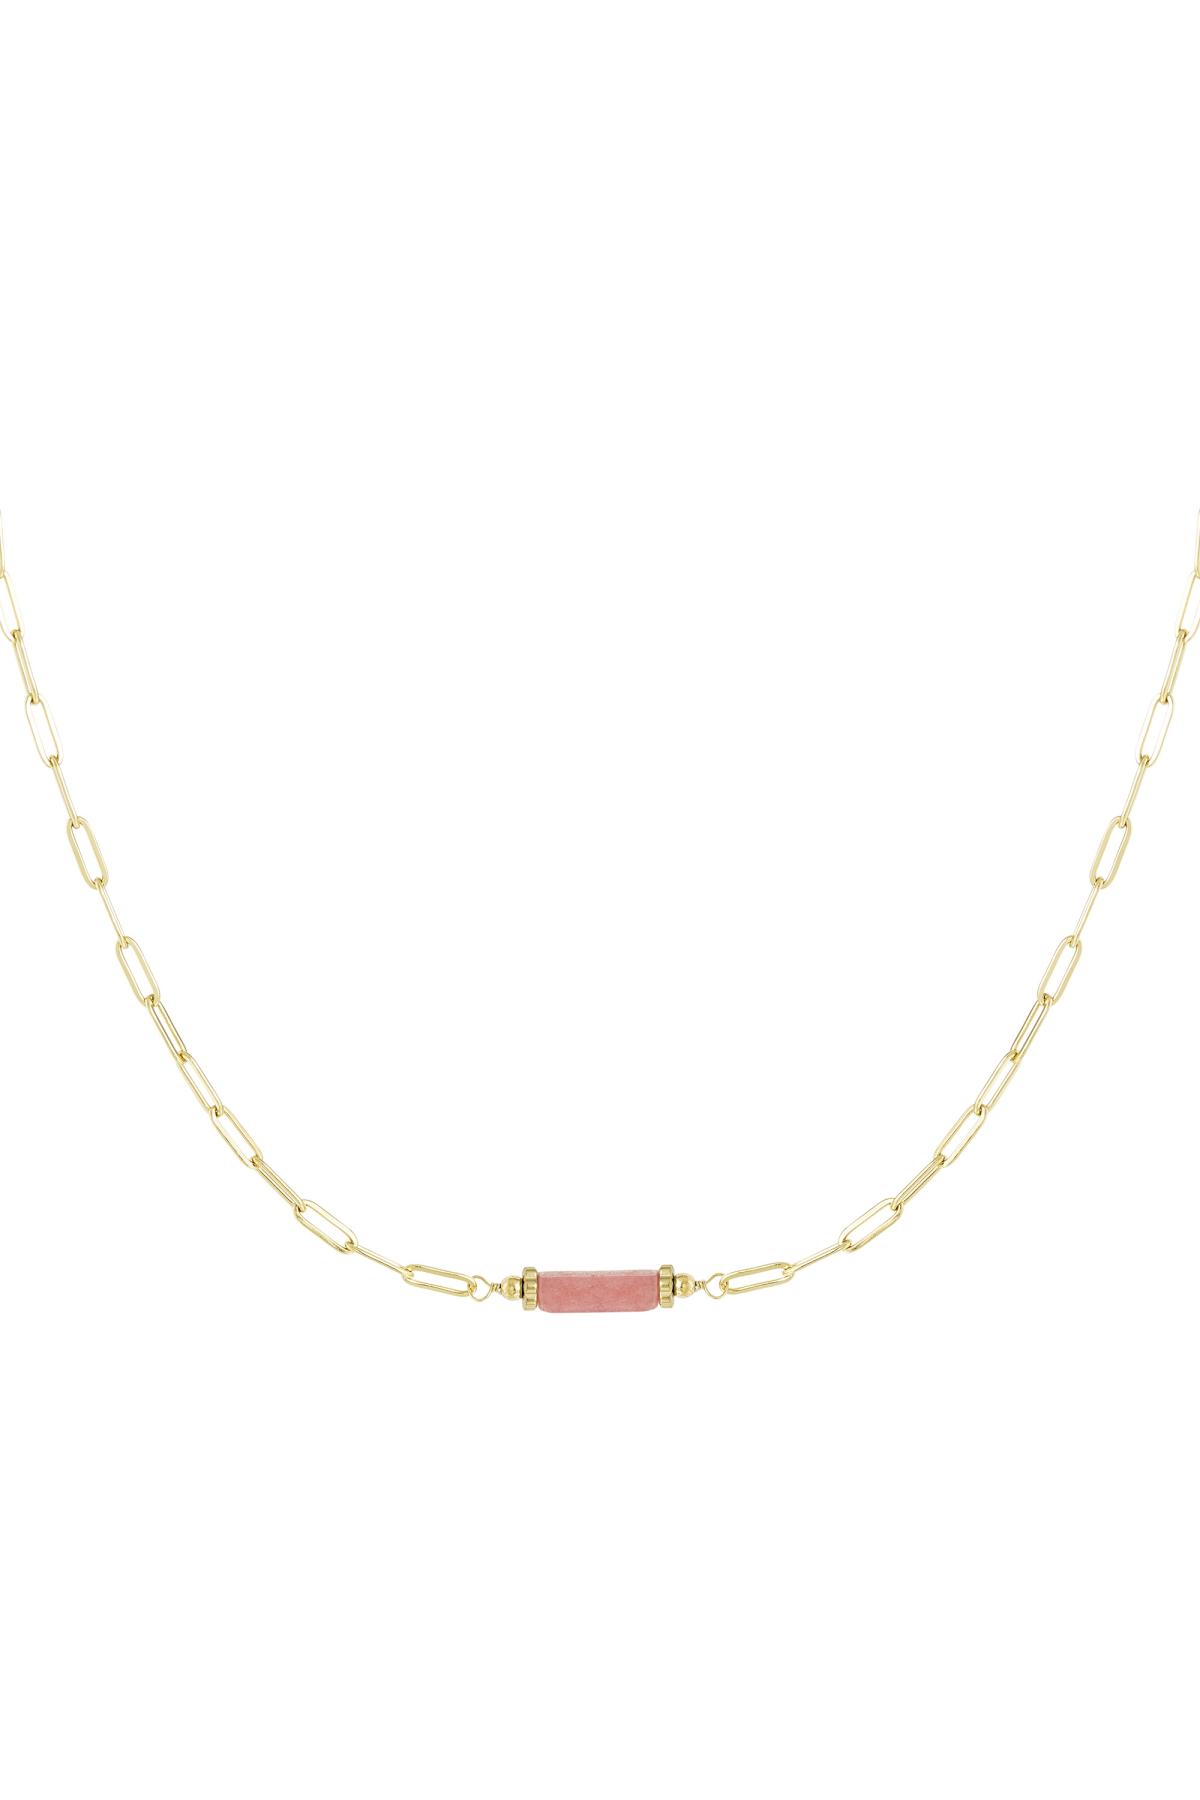 Taş uçlu baklalı zincir - Doğal taş koleksiyonu Pink & Gold Stainless Steel 